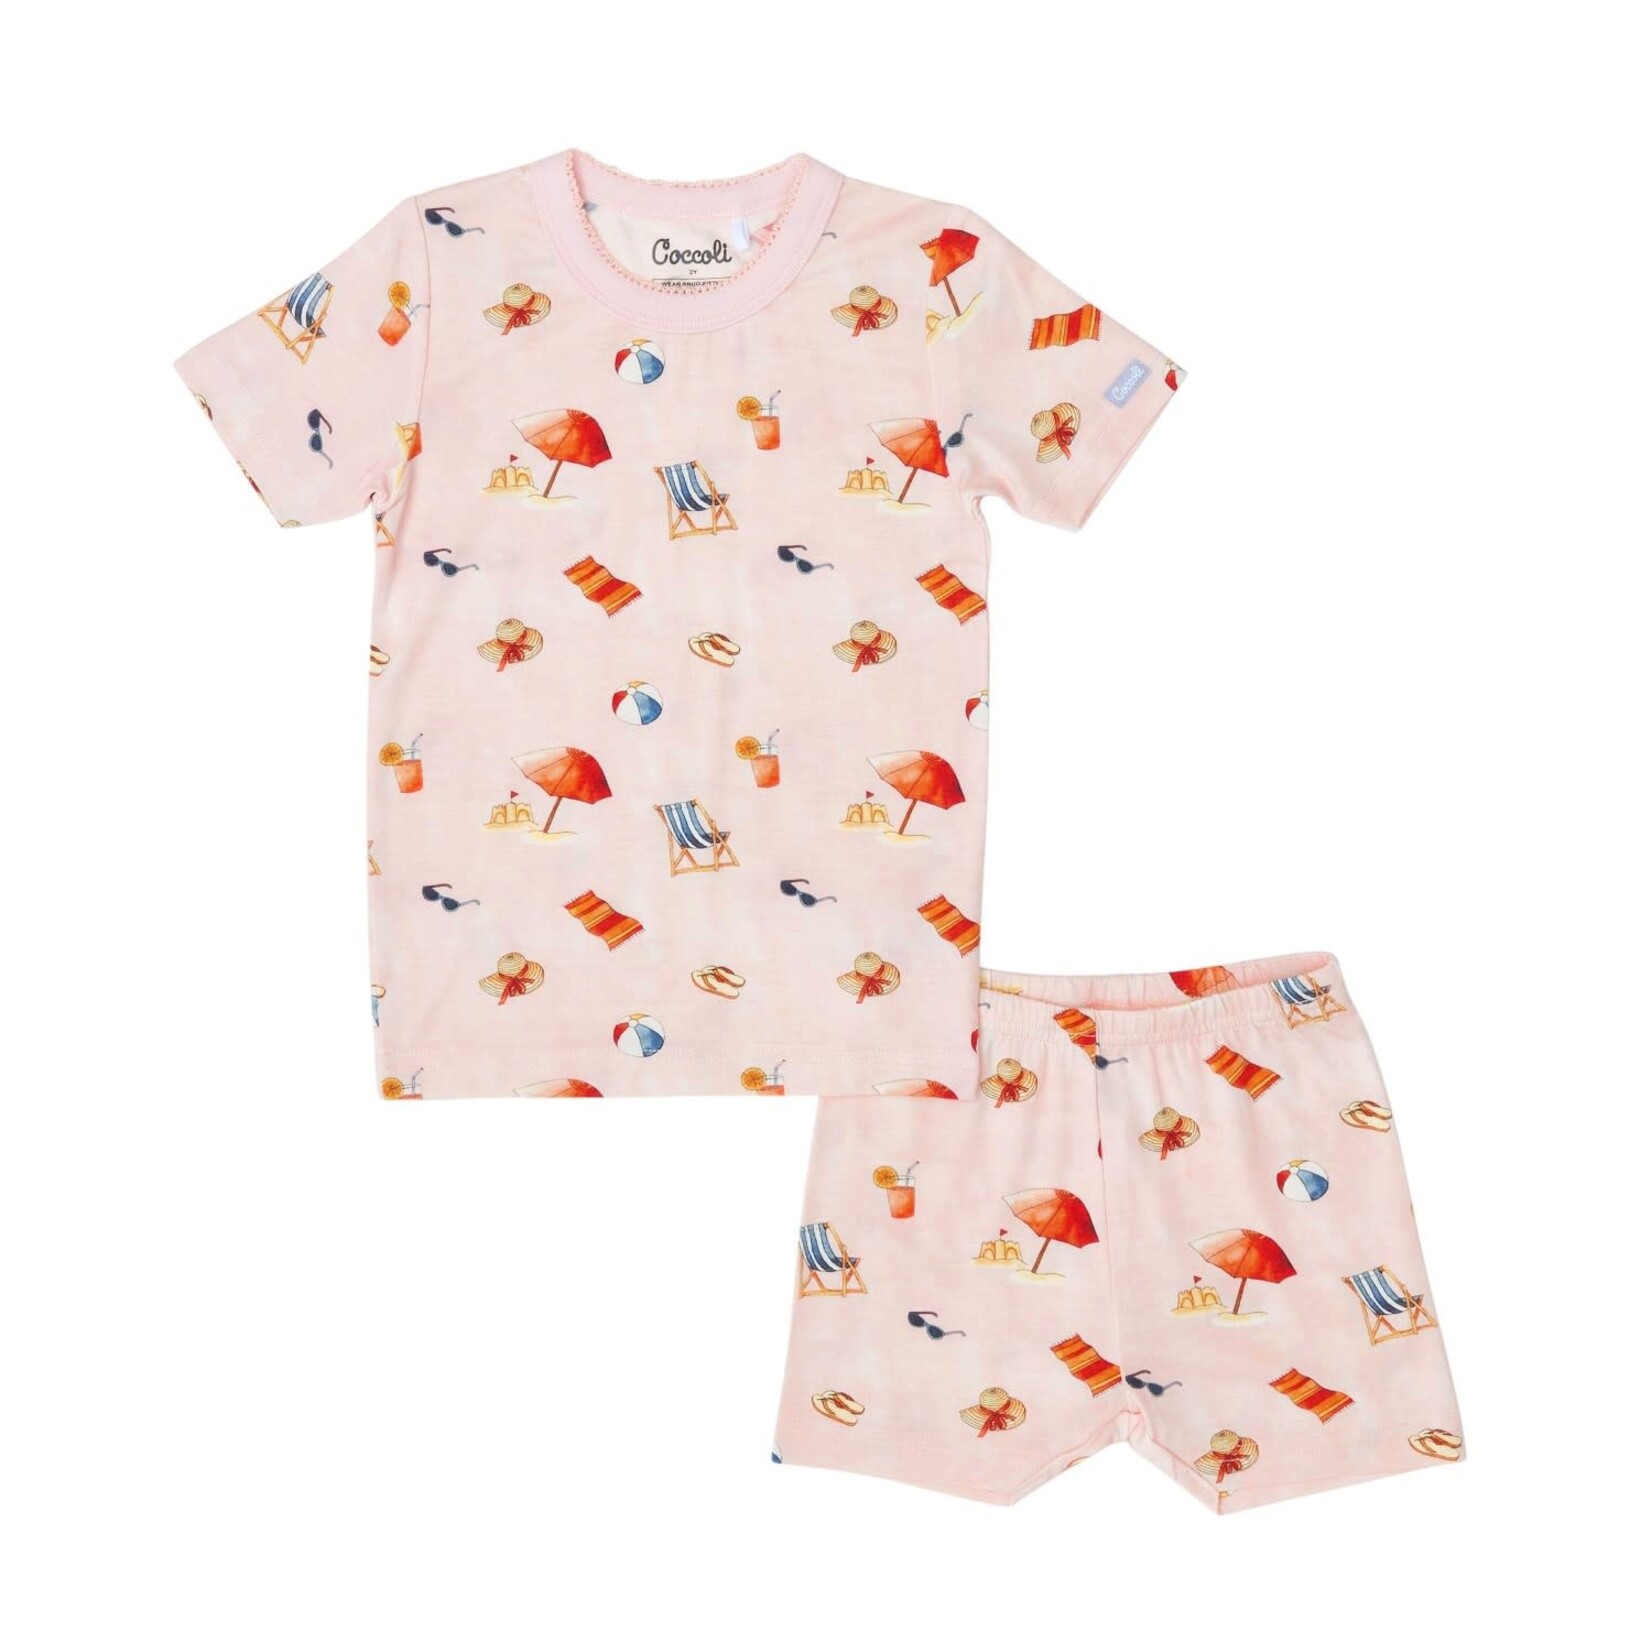 Coccoli COCCOLI - Pyjama court deux pièces rose pâle avec motifs d'accessoires de plage